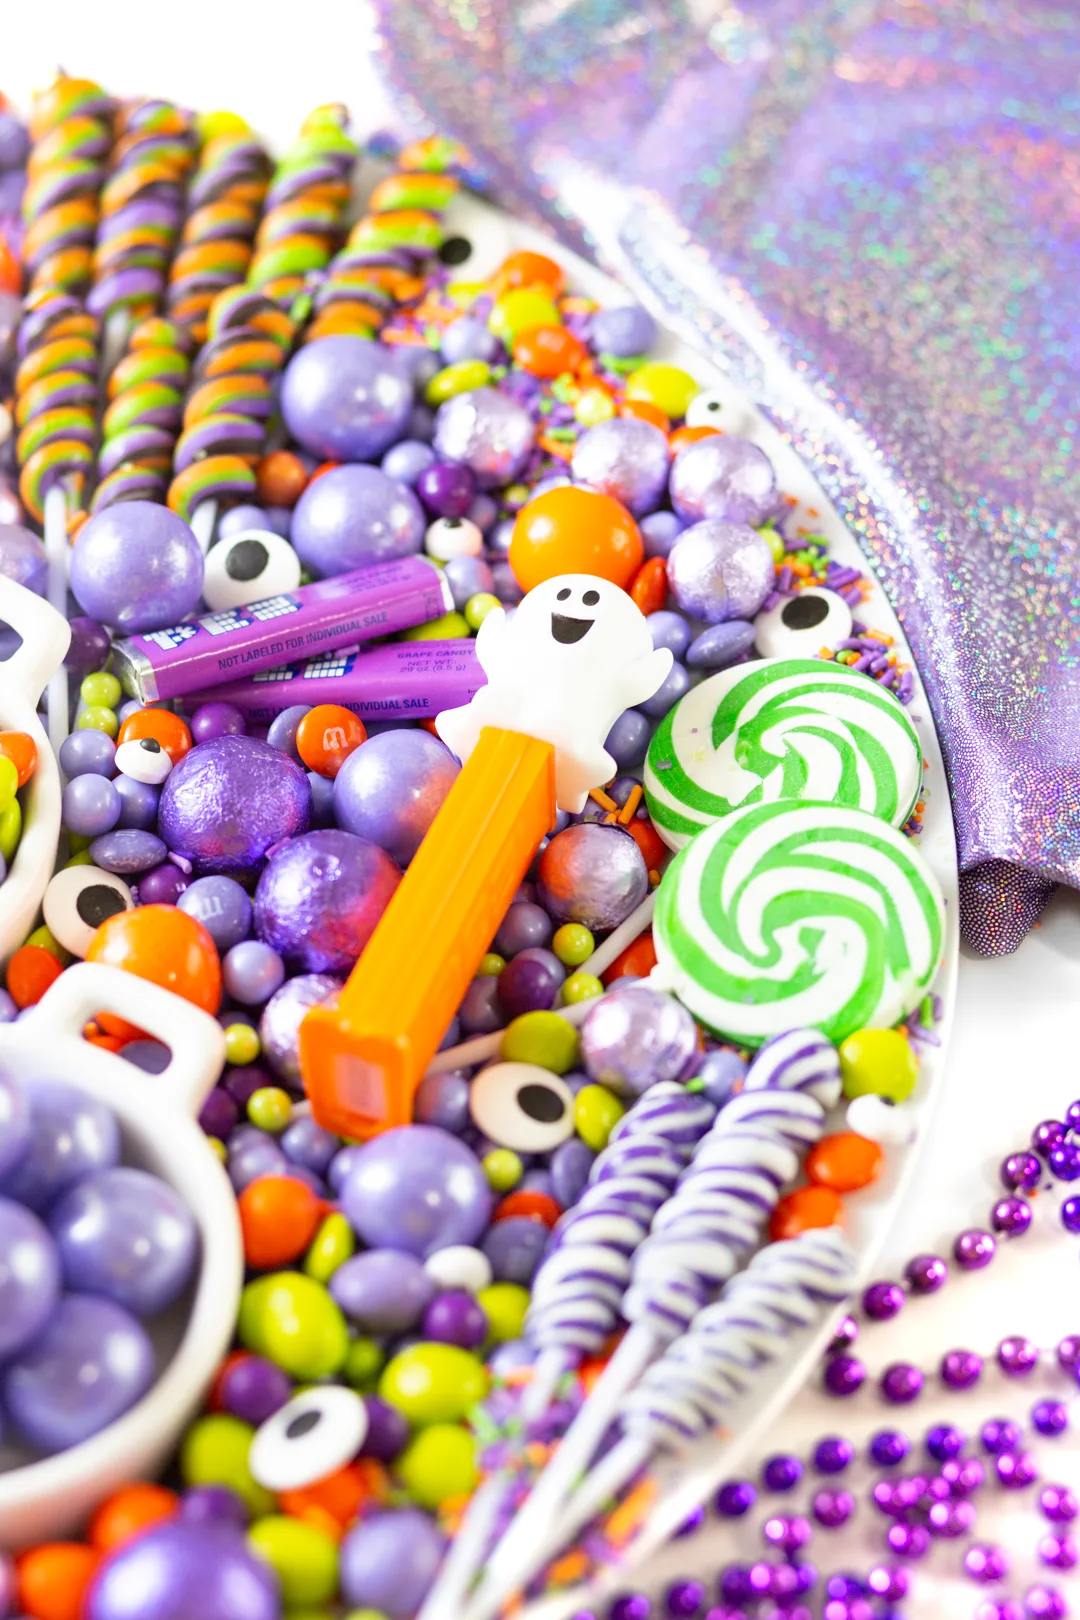 Ghost Pez dispenser, green swirl lollipops, purple swirl lollipops, eye candy